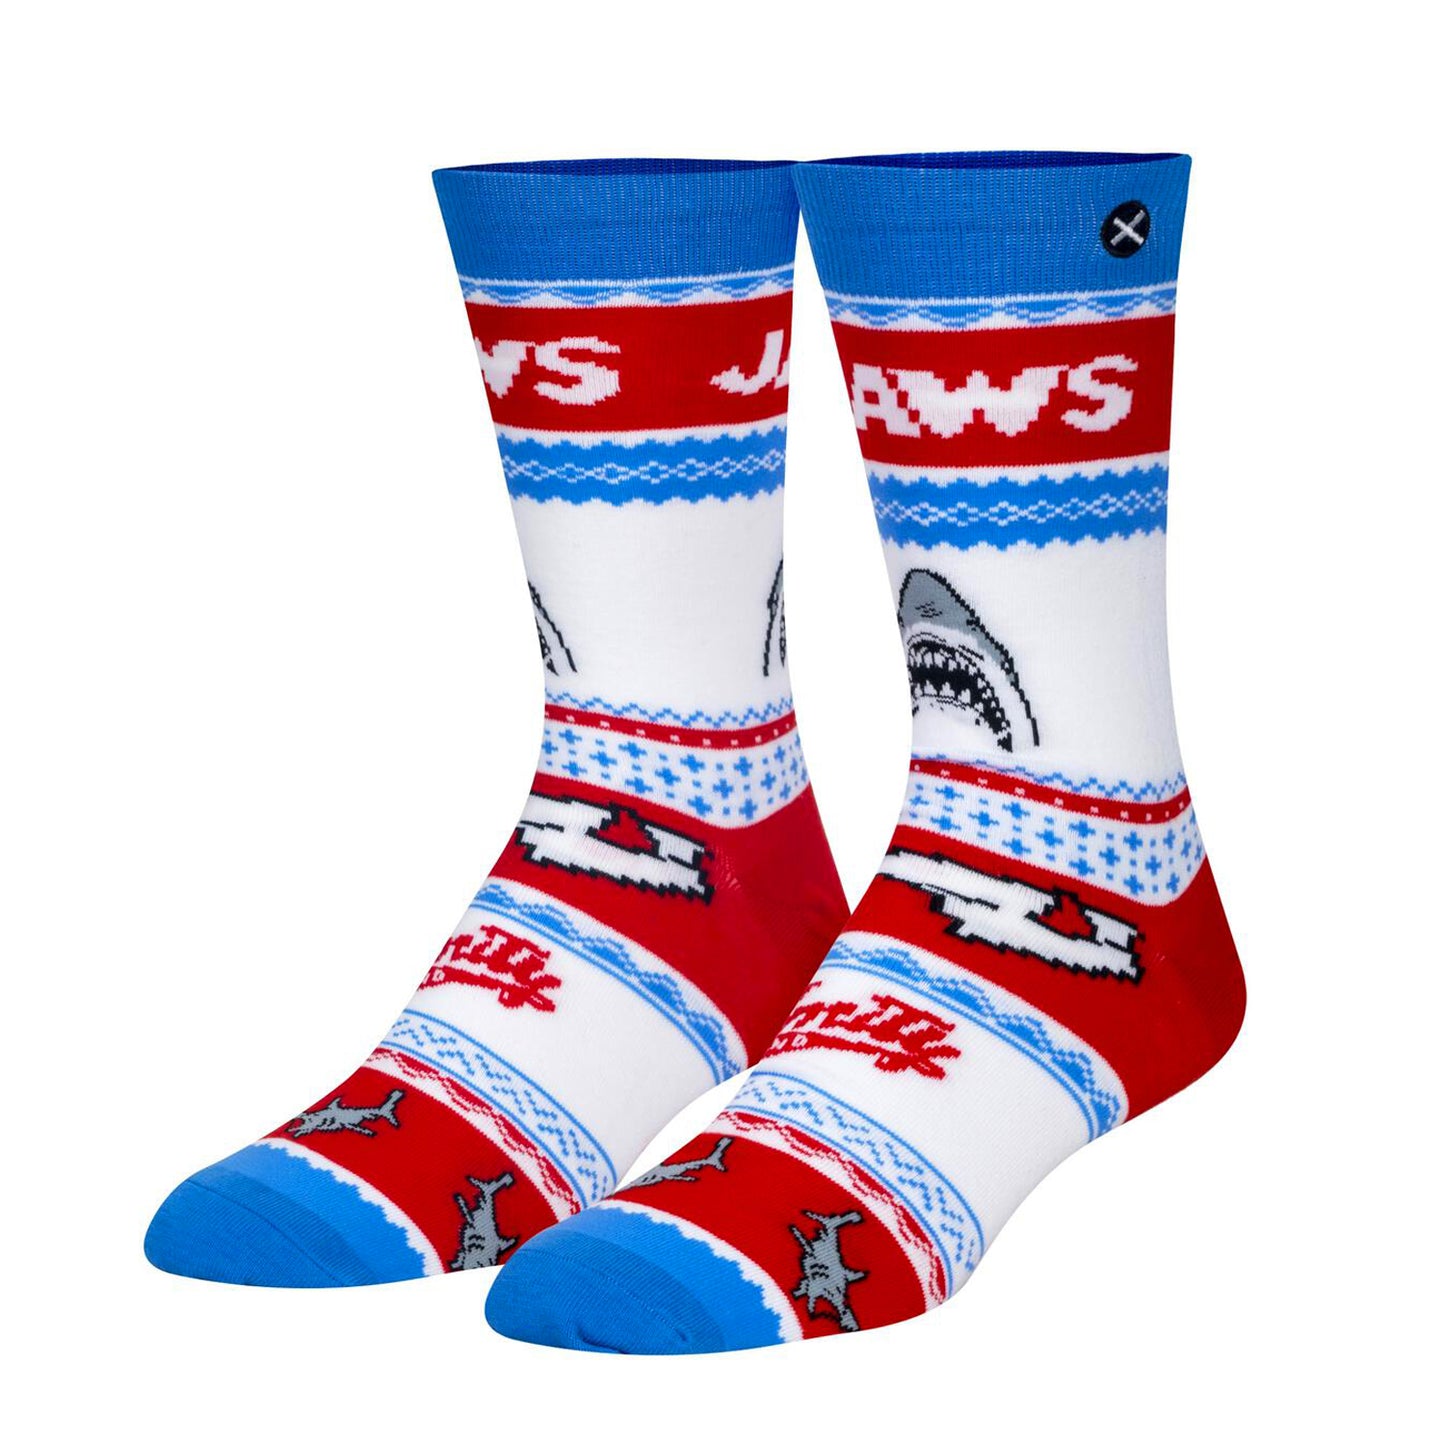 Odd Sox Men's Crew Socks - Jaws Sweater